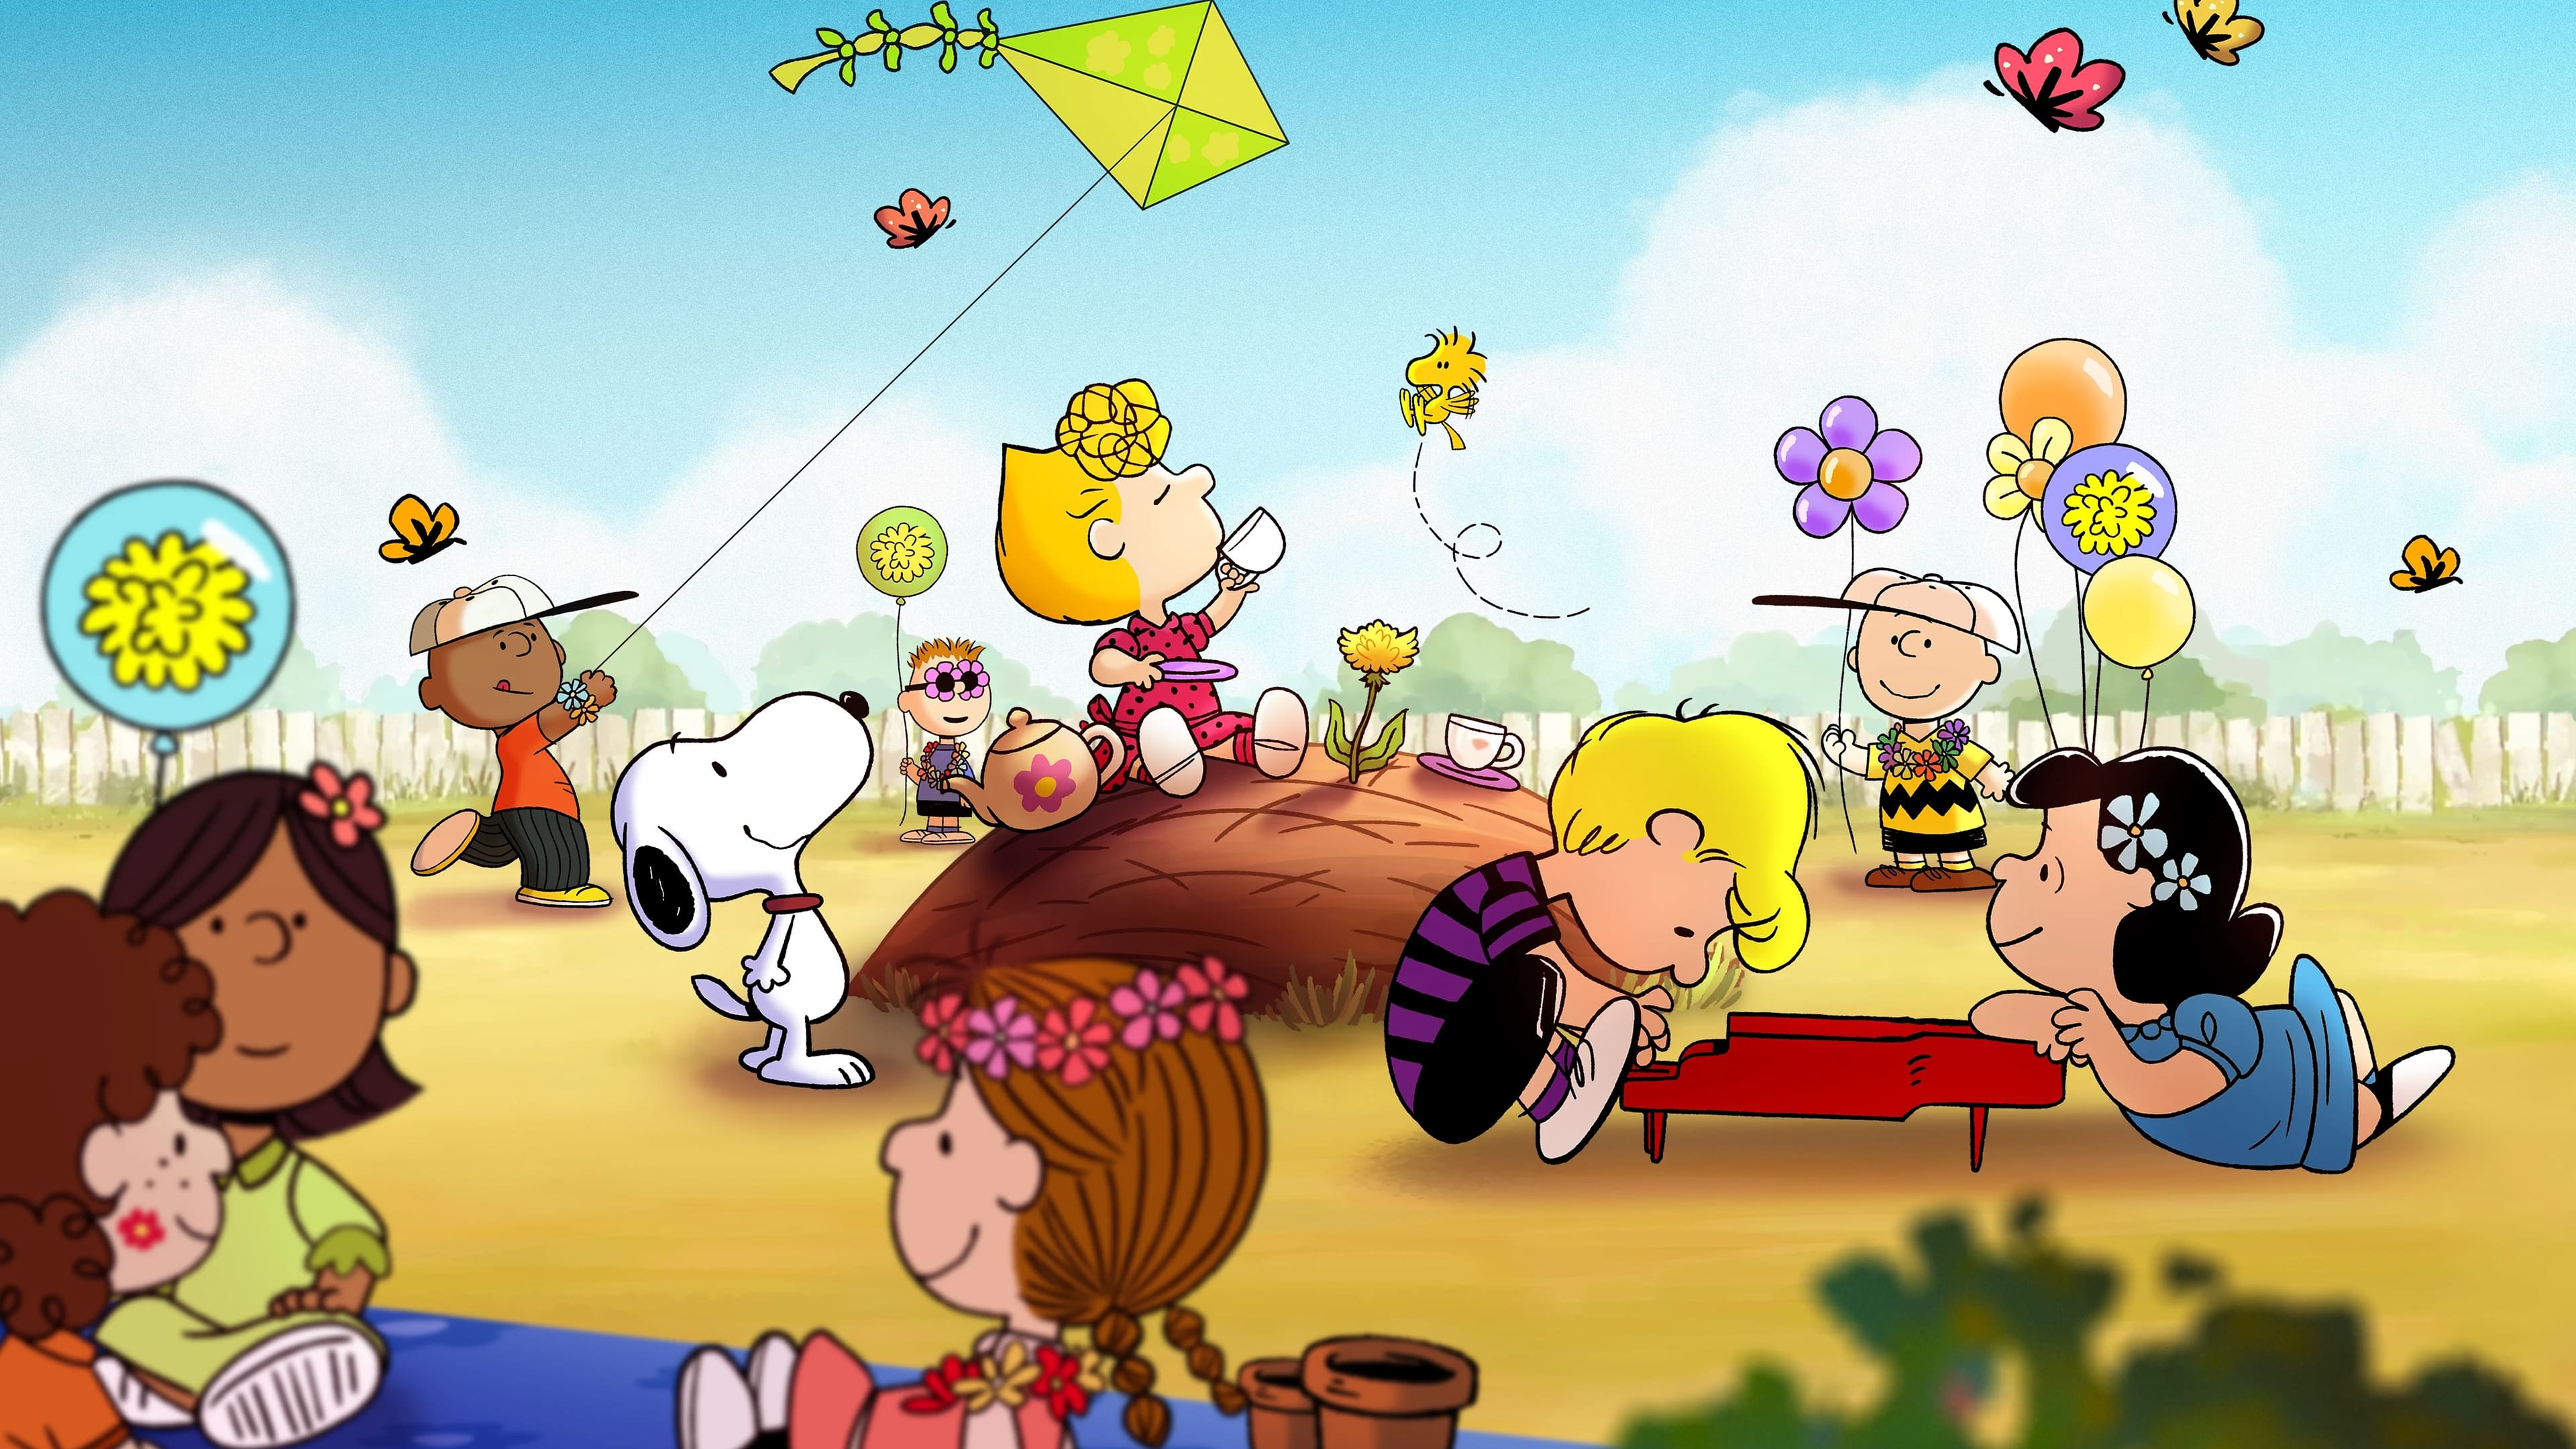 Snoopy presenta: le piccole cose contano, Charlie Brown